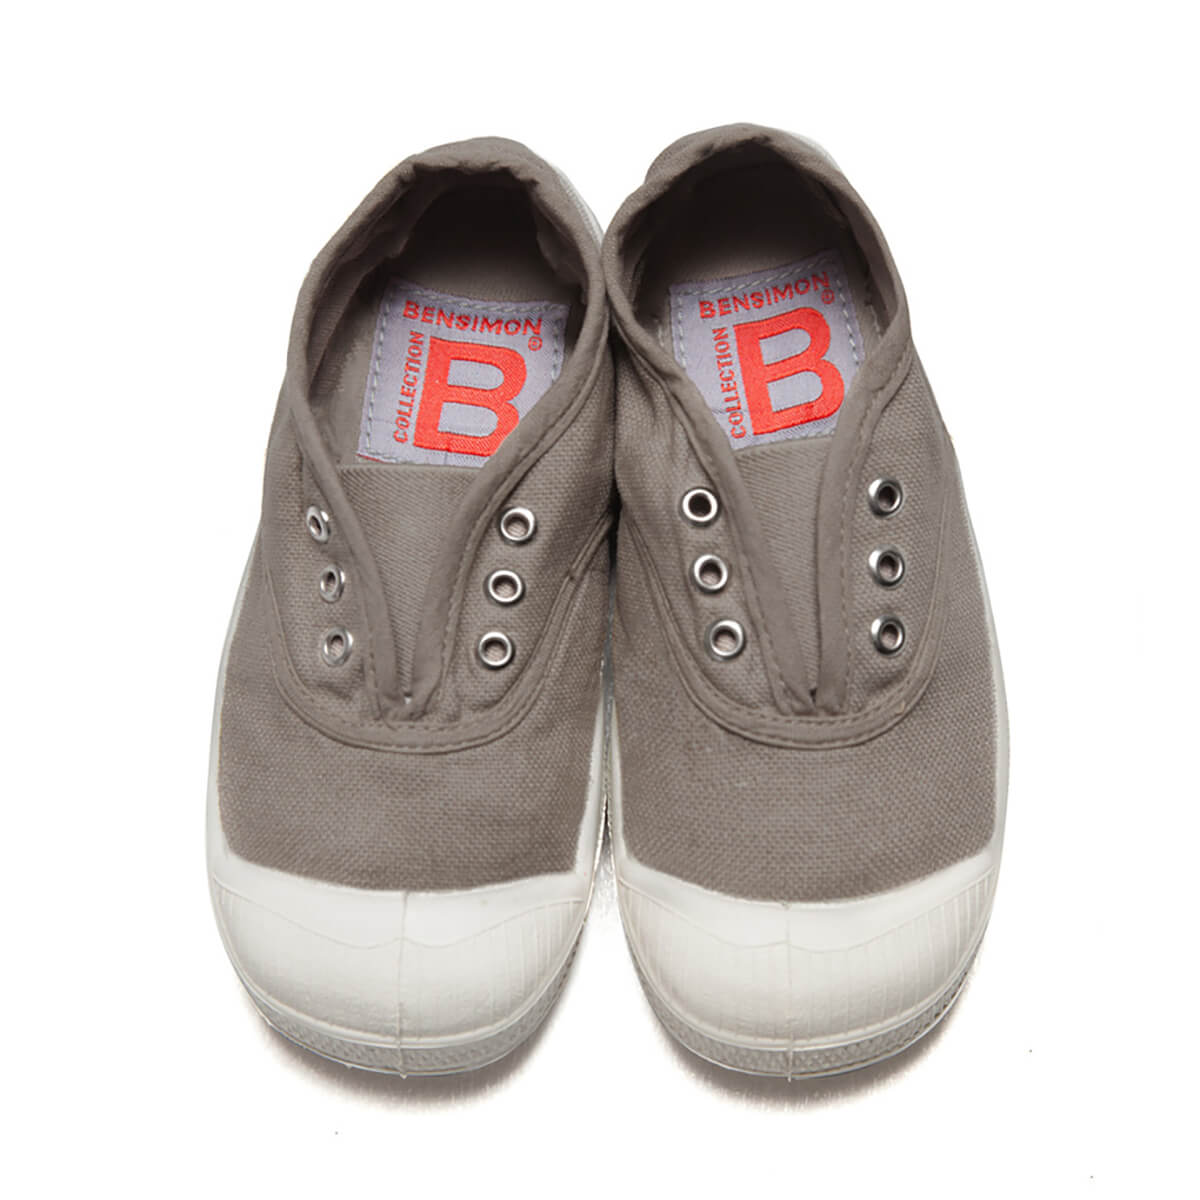 Bensimon | Sneakers fashion, Bensimon shoes, Basic shoes